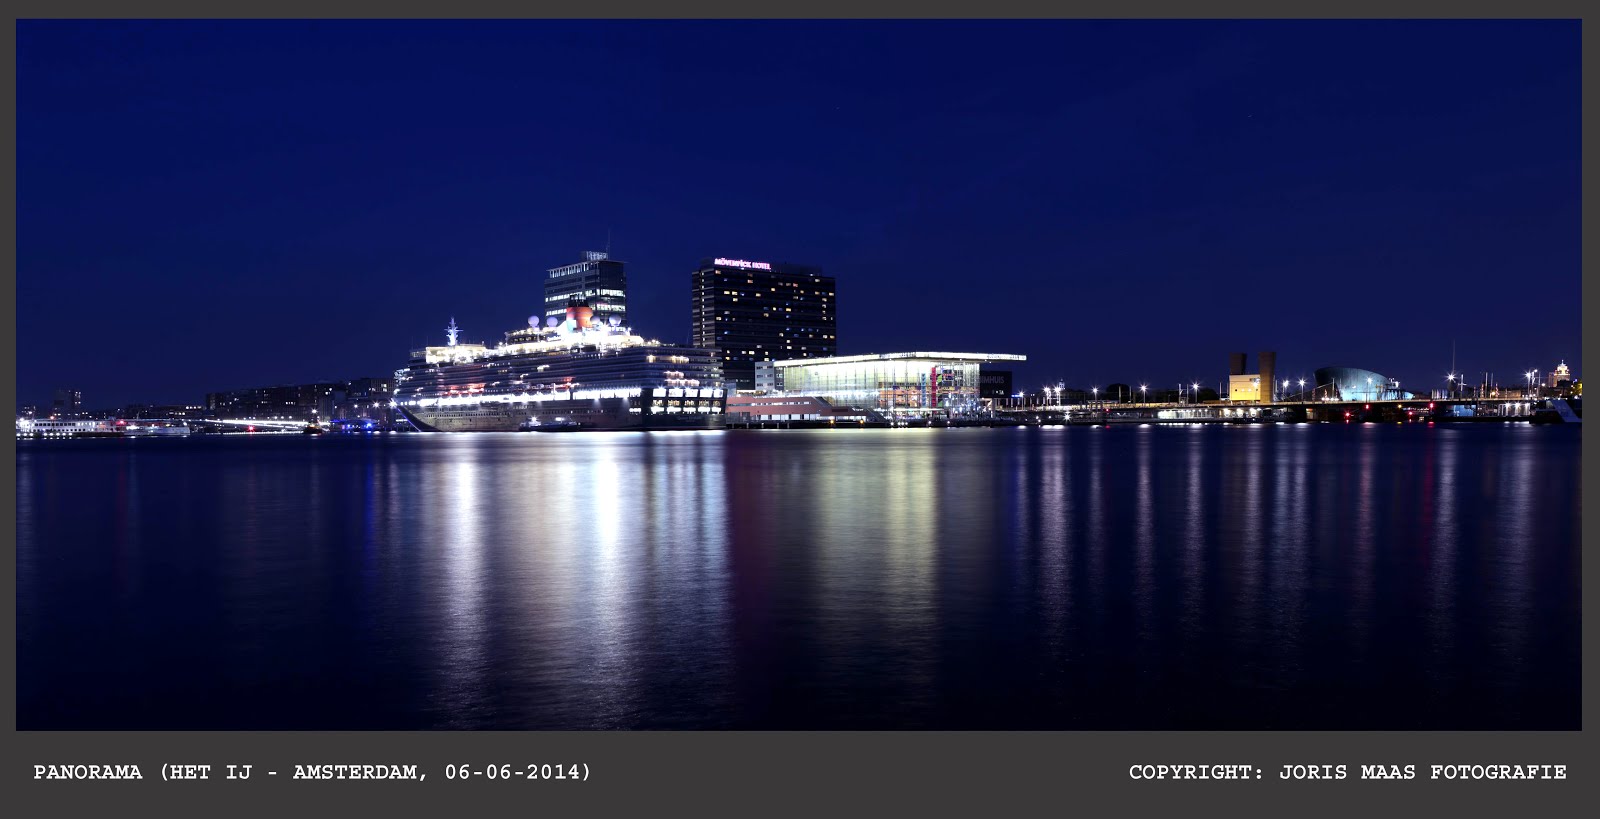 Amsterdam - Het IJ (Cruiseship)